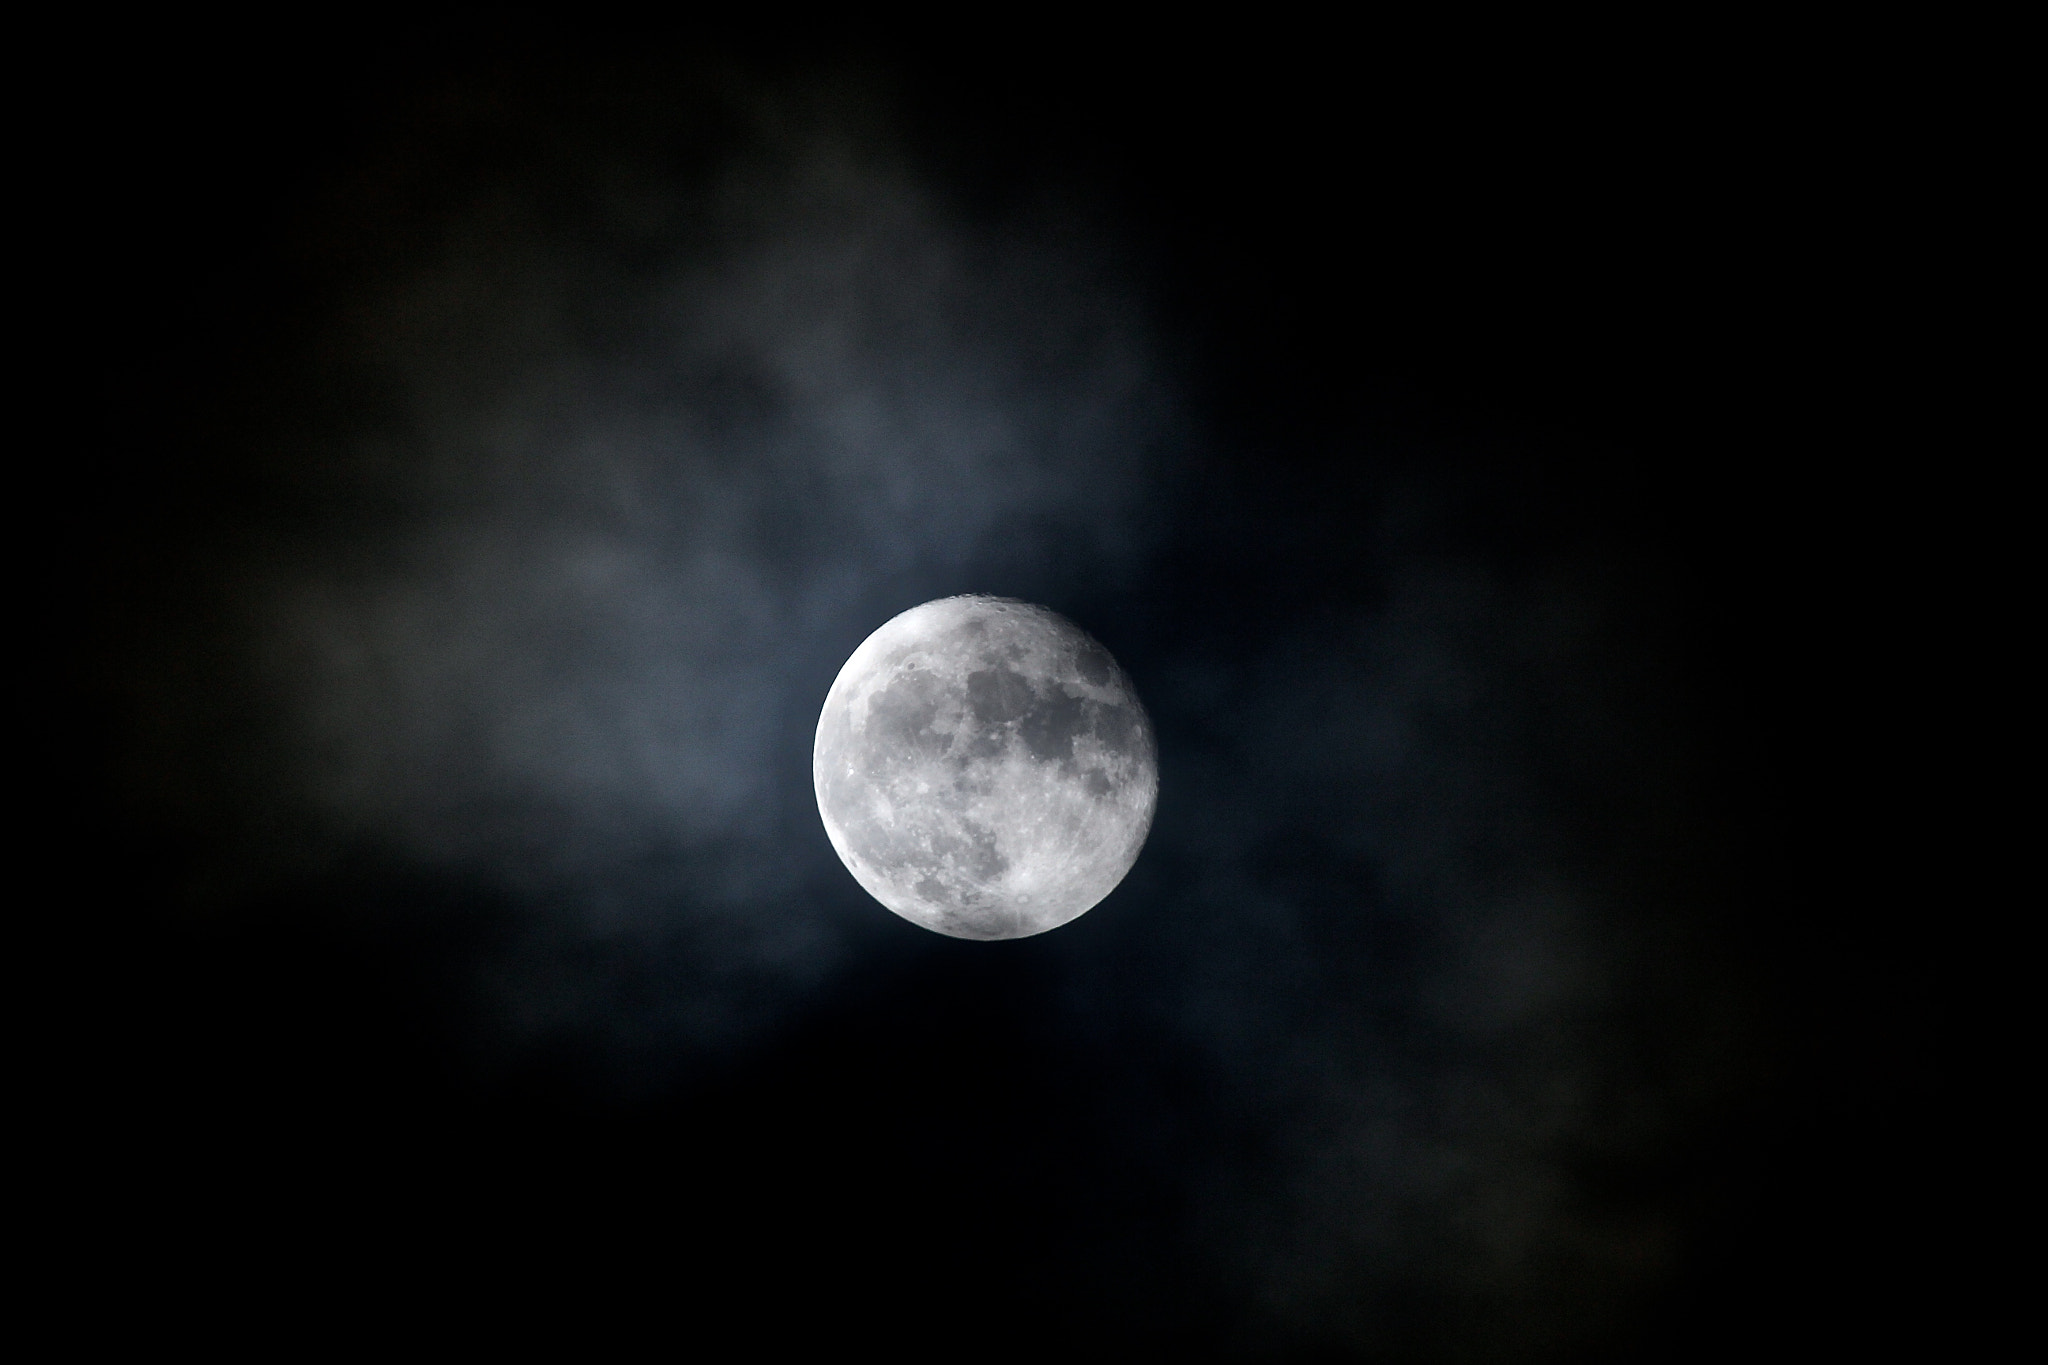 Canon EOS 60D sample photo. Super moon photography